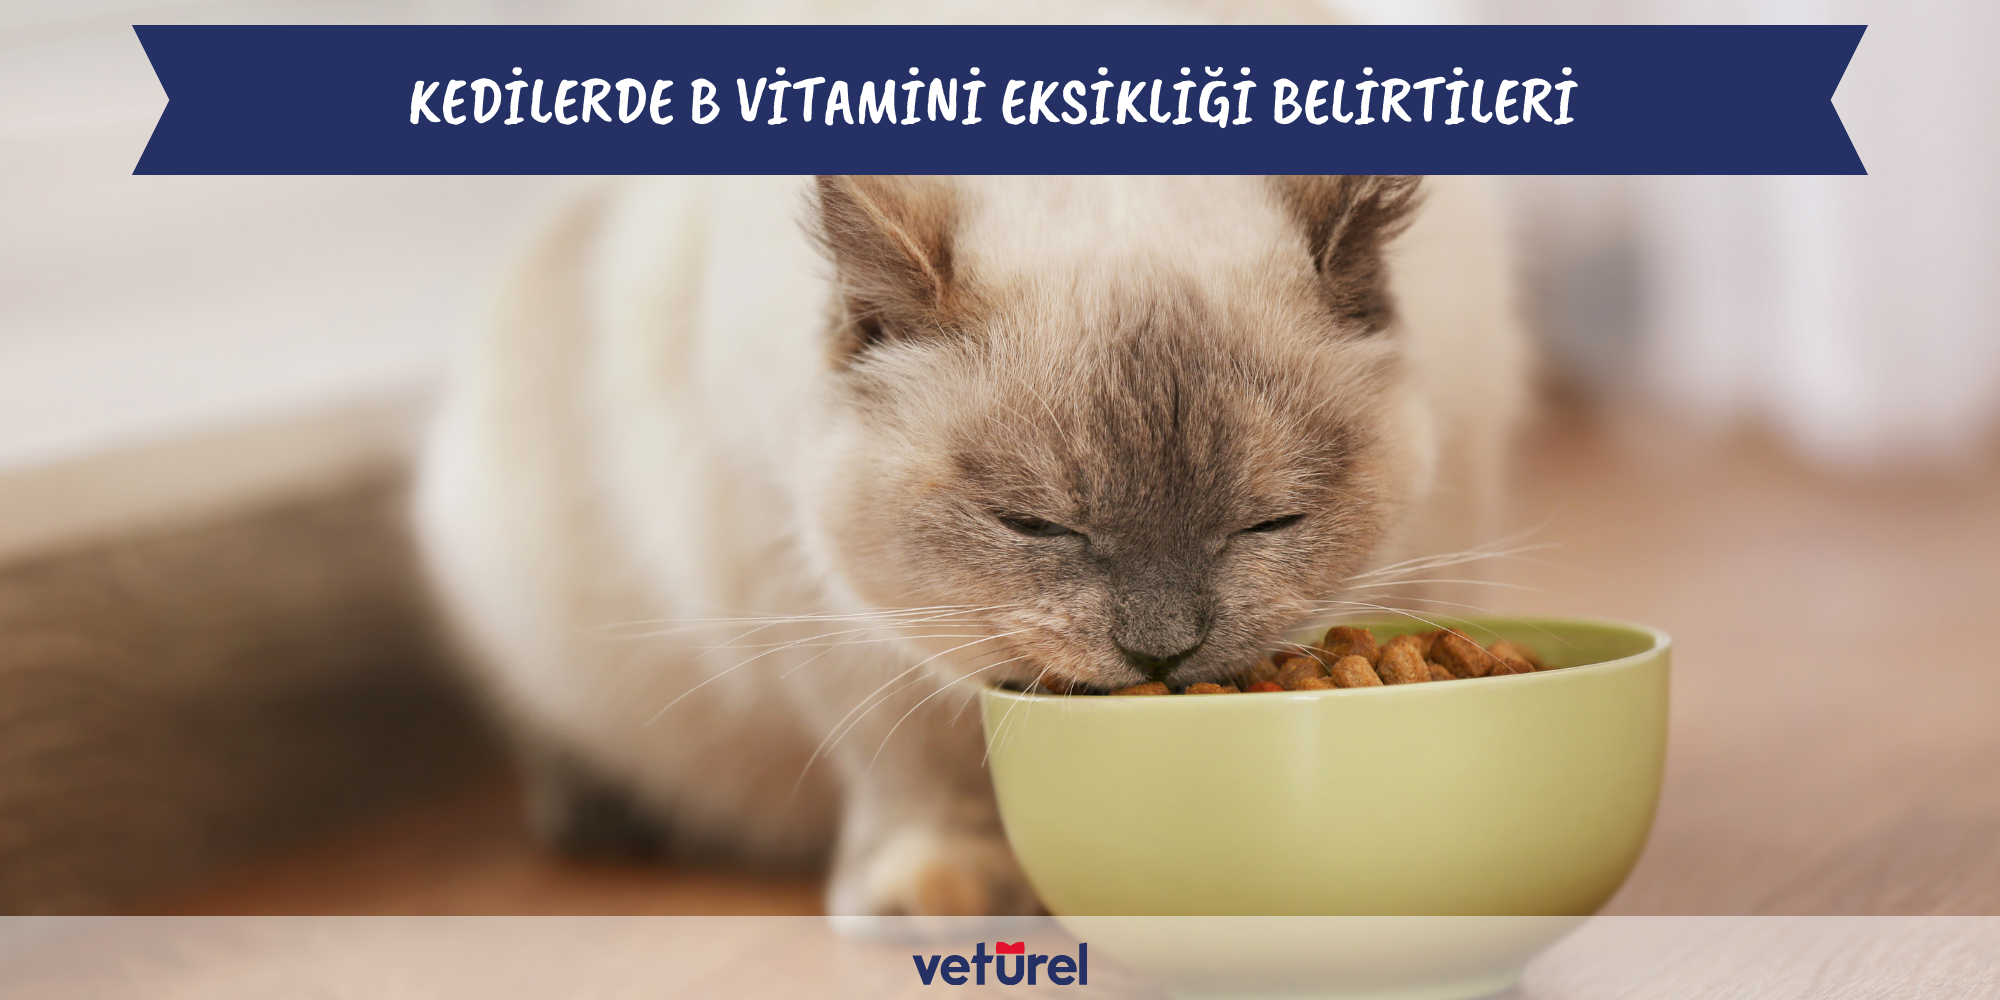 kedilerde b vitamini eksikliği belirtileri